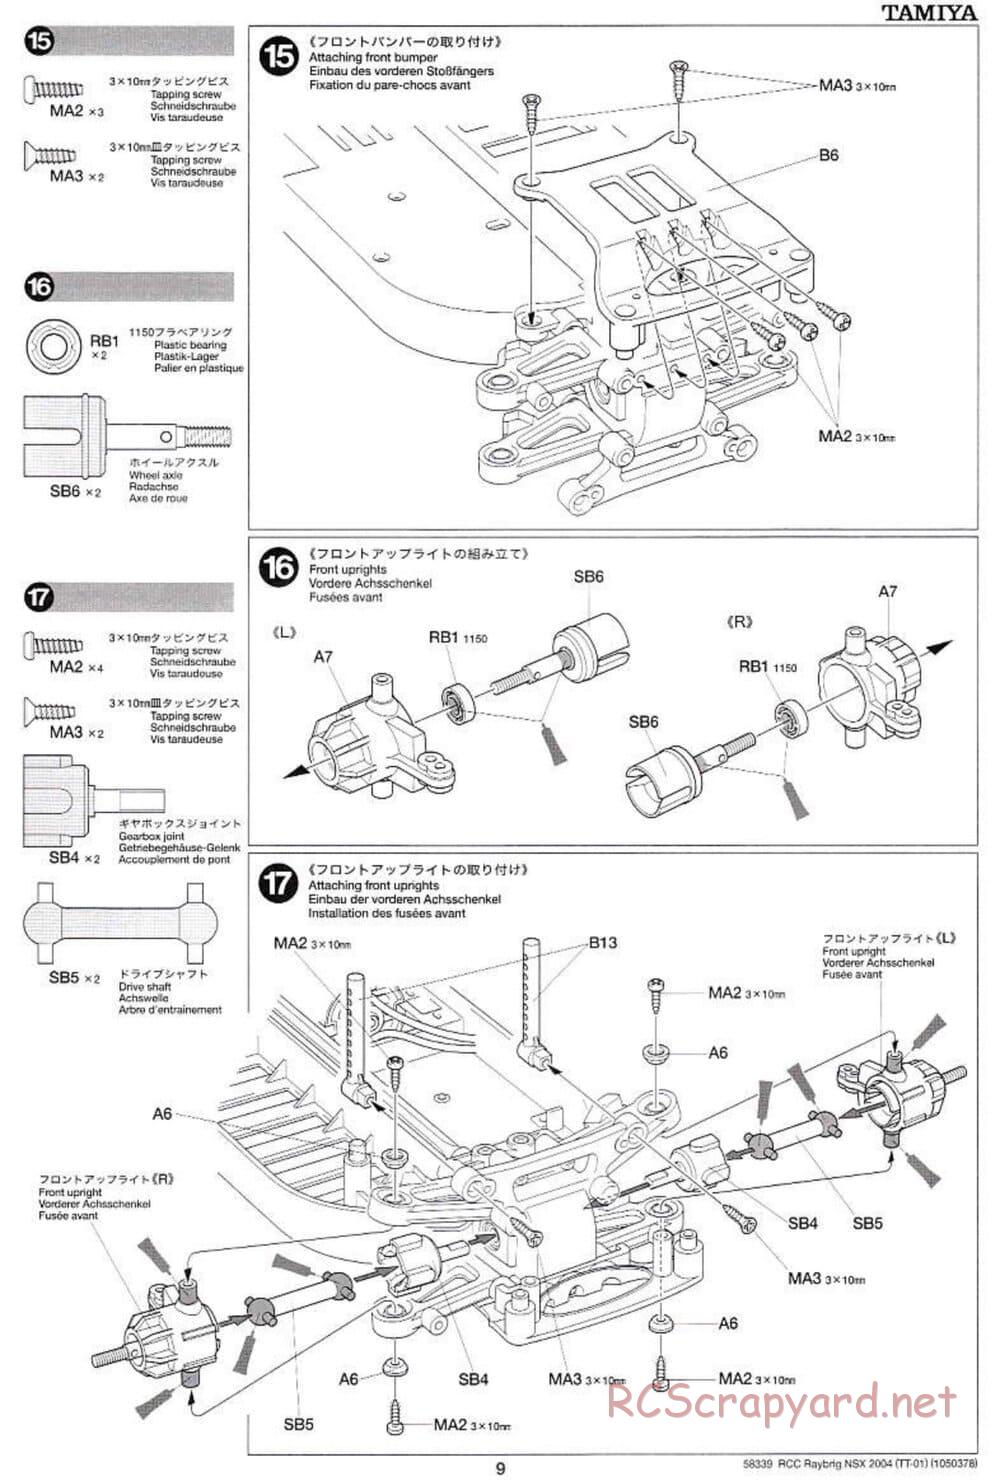 Tamiya - Raybrig NSX 2004 Chassis - Manual - Page 9